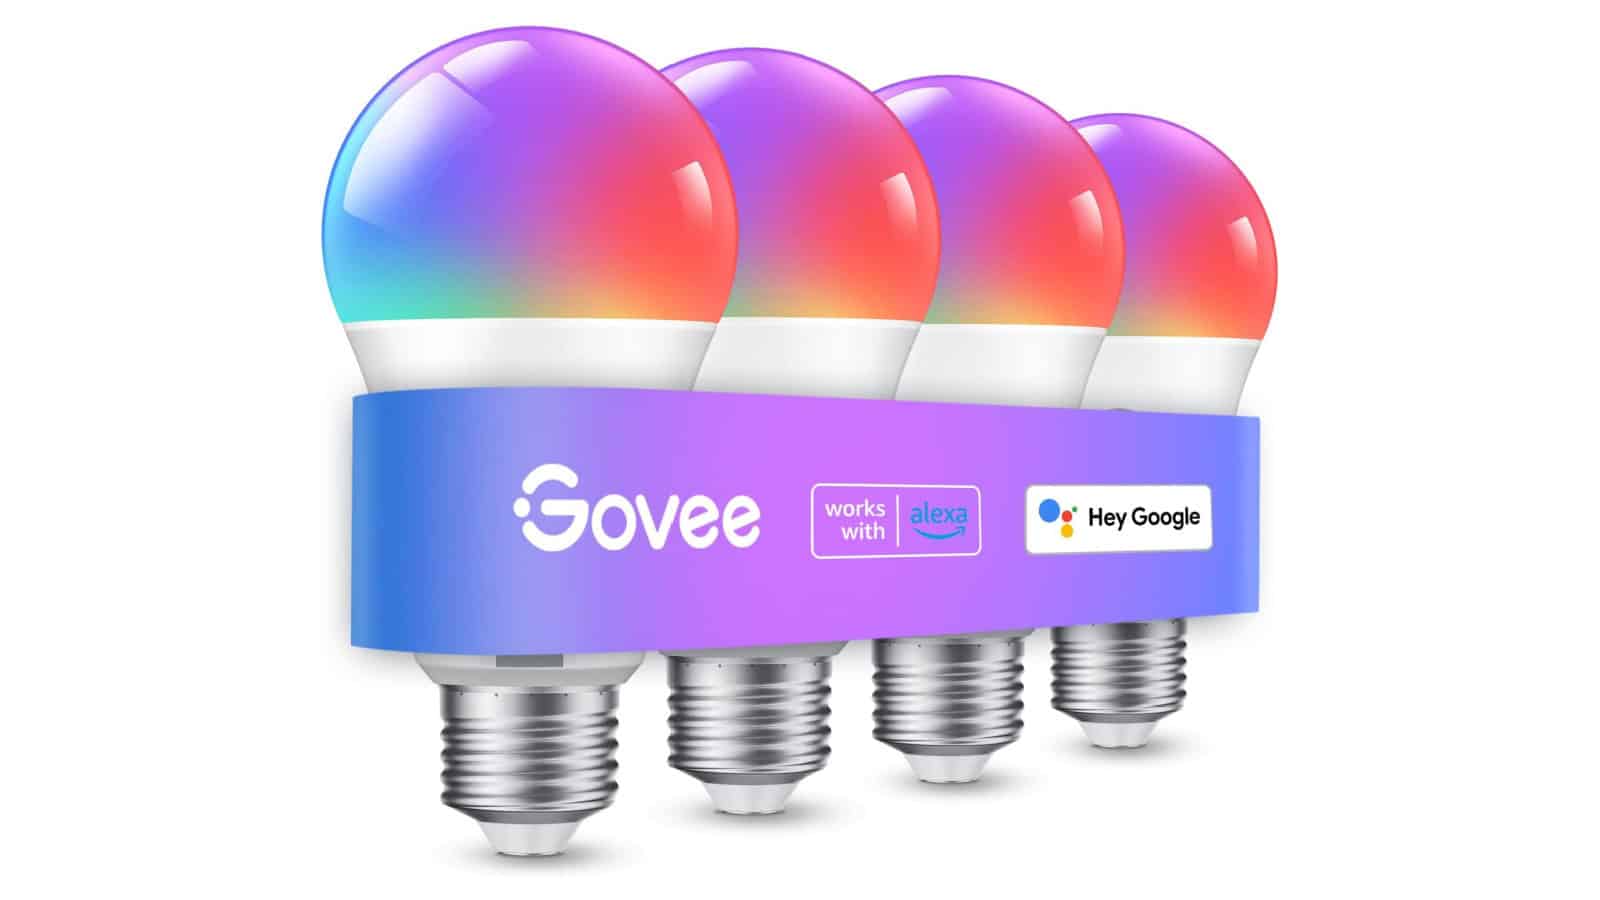 Consigue este paquete de 4 bombillas inteligentes de color Govee por $25